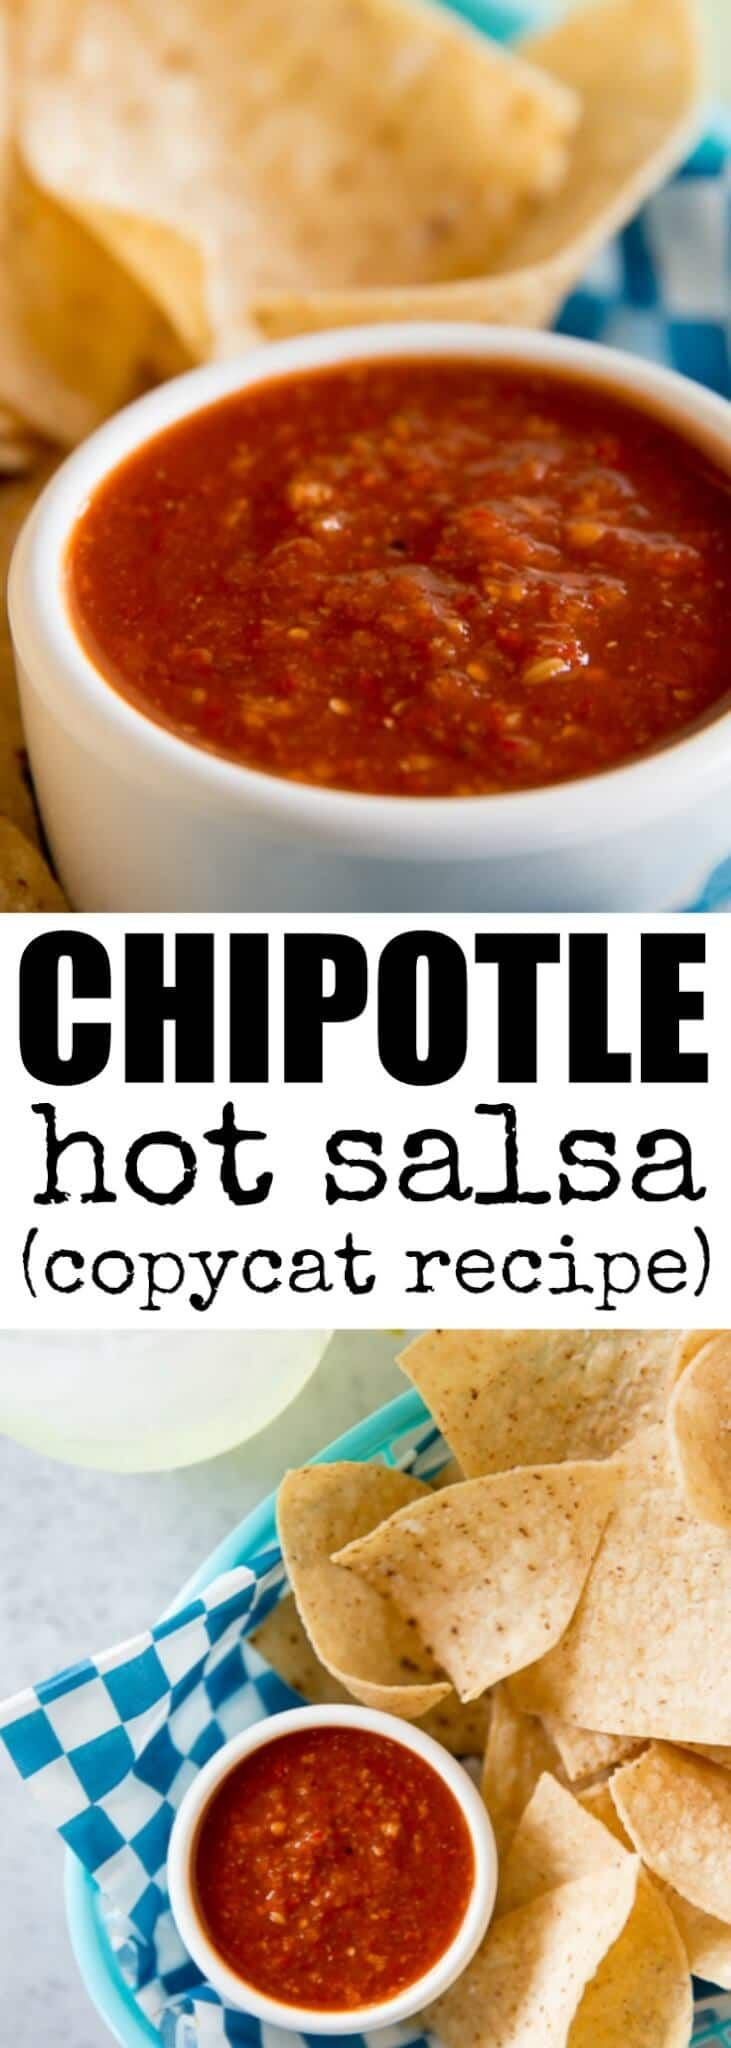 Chipotle Red Salsa Recipe
 Chipotle Hot Salsa Recipe Copycat Recipe